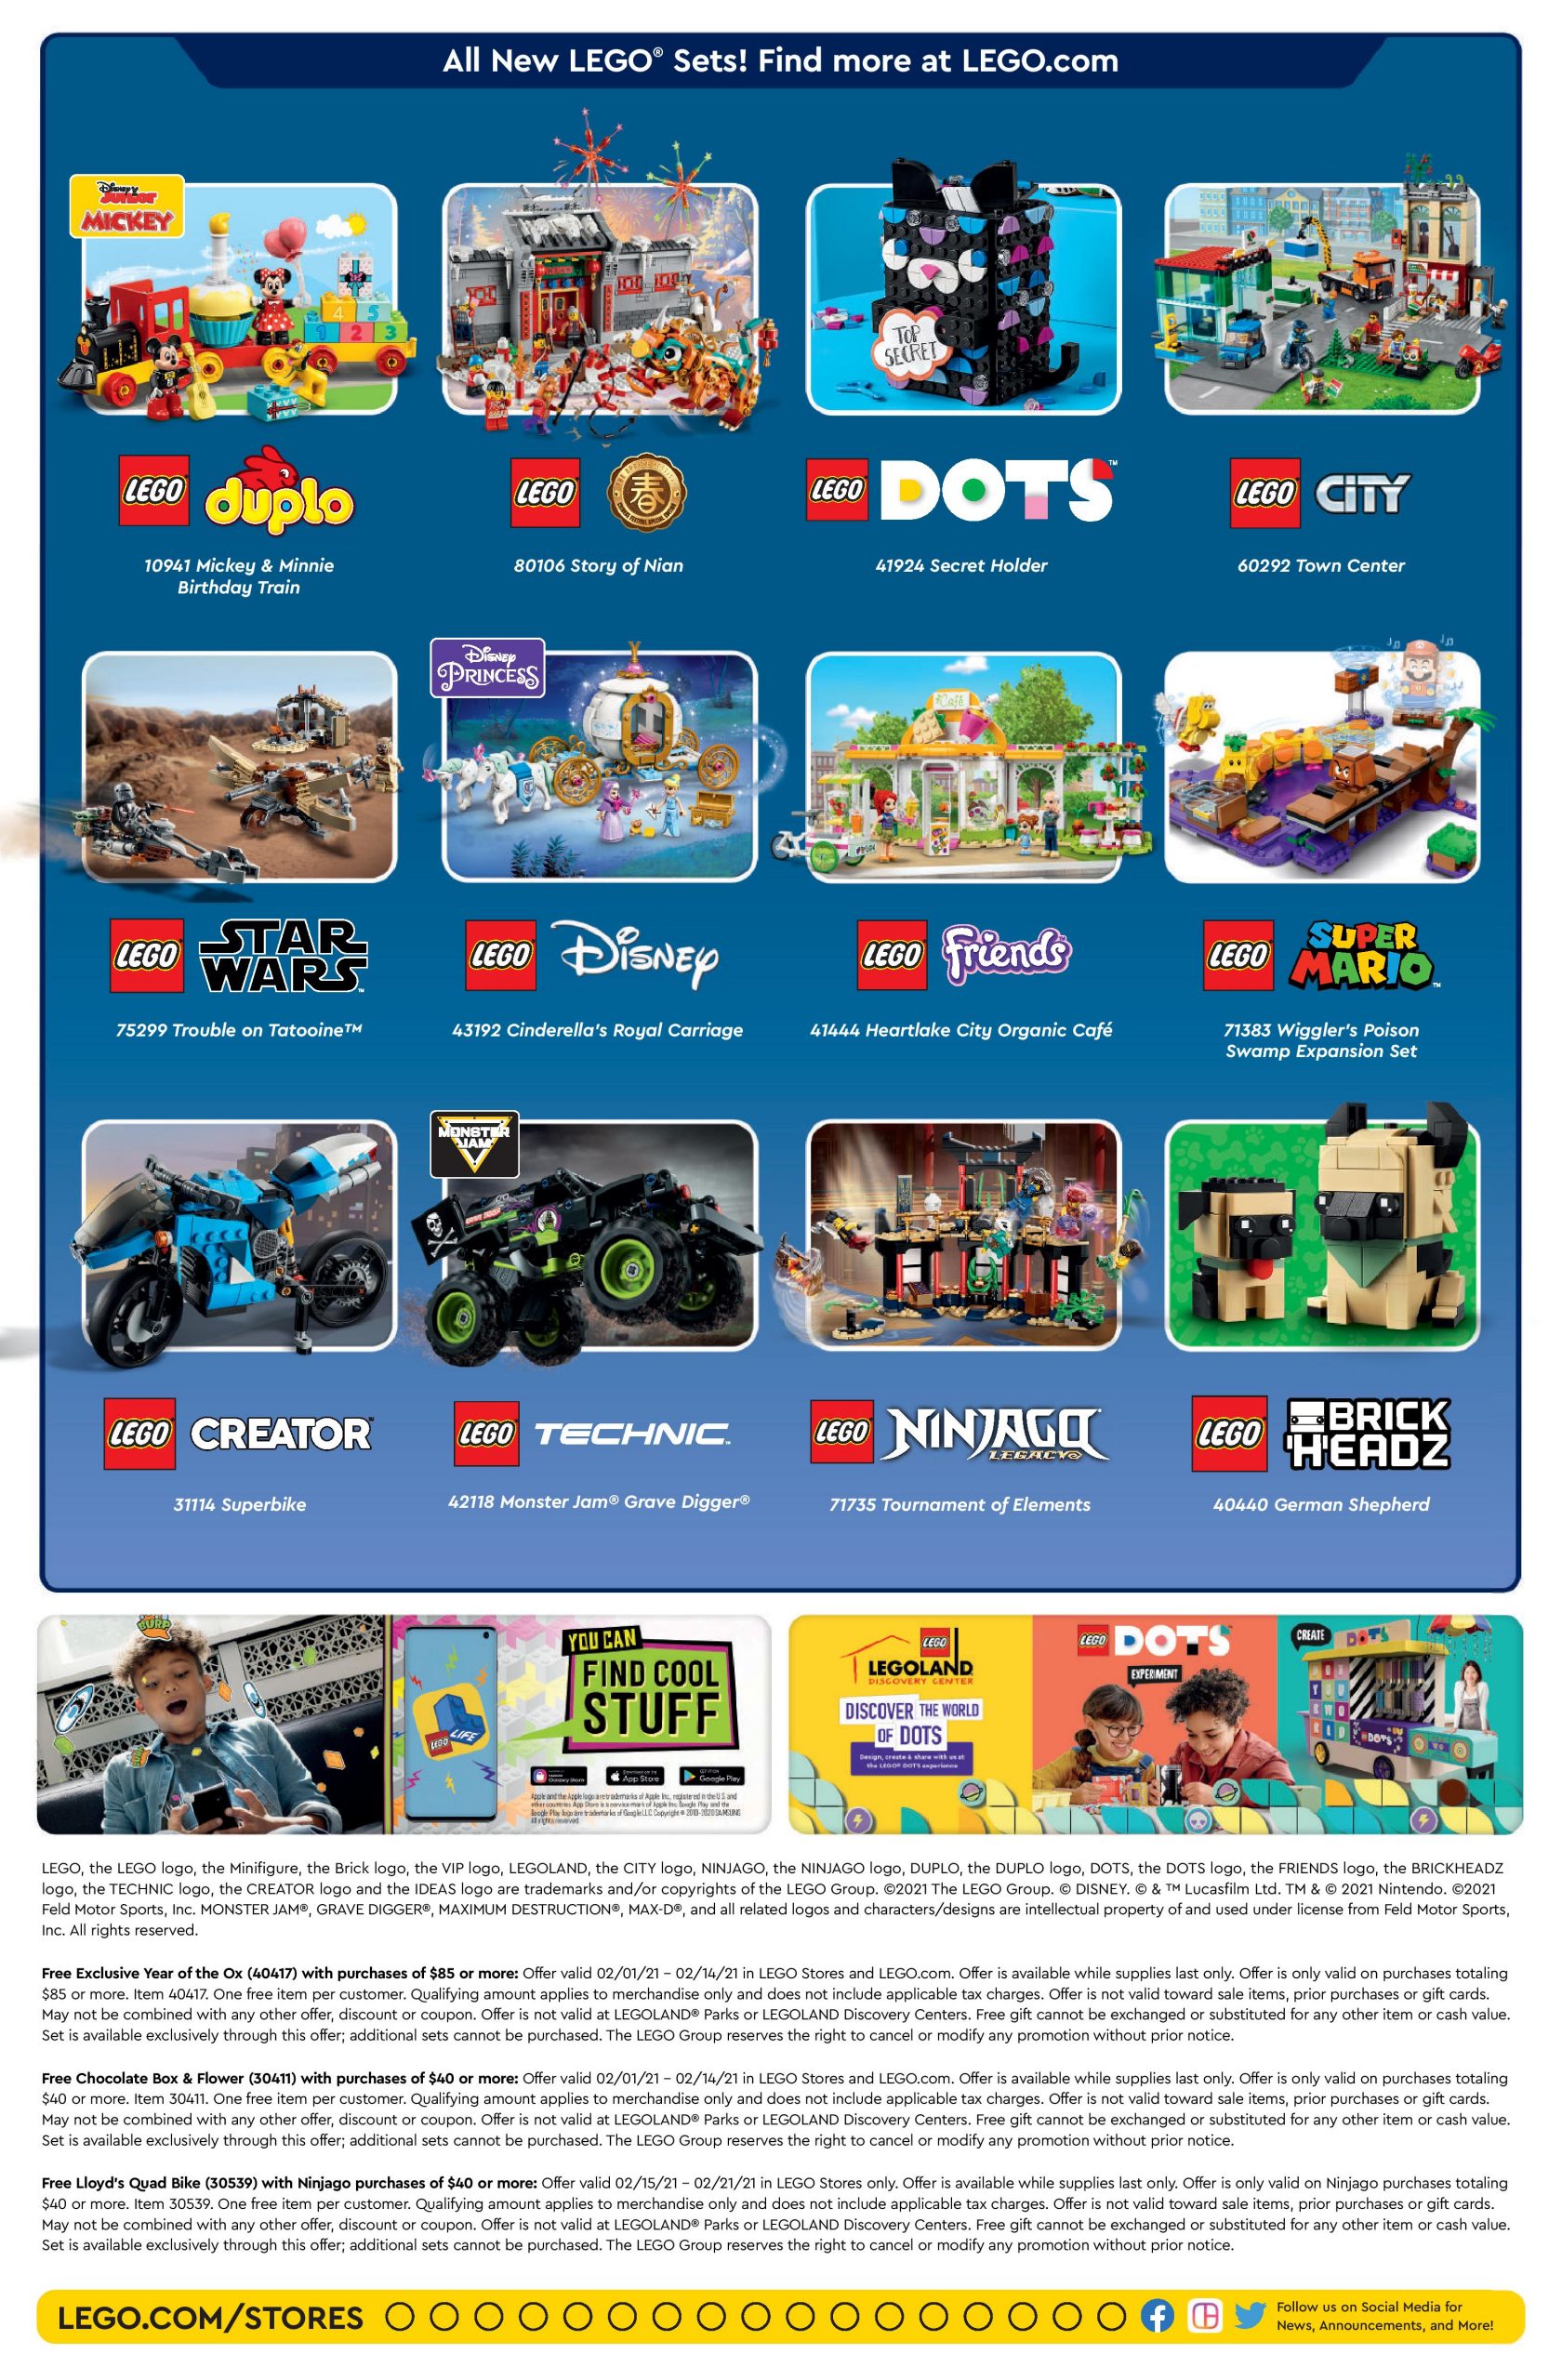 Brick Built Blogs: Lego February 2021 Store Calendar